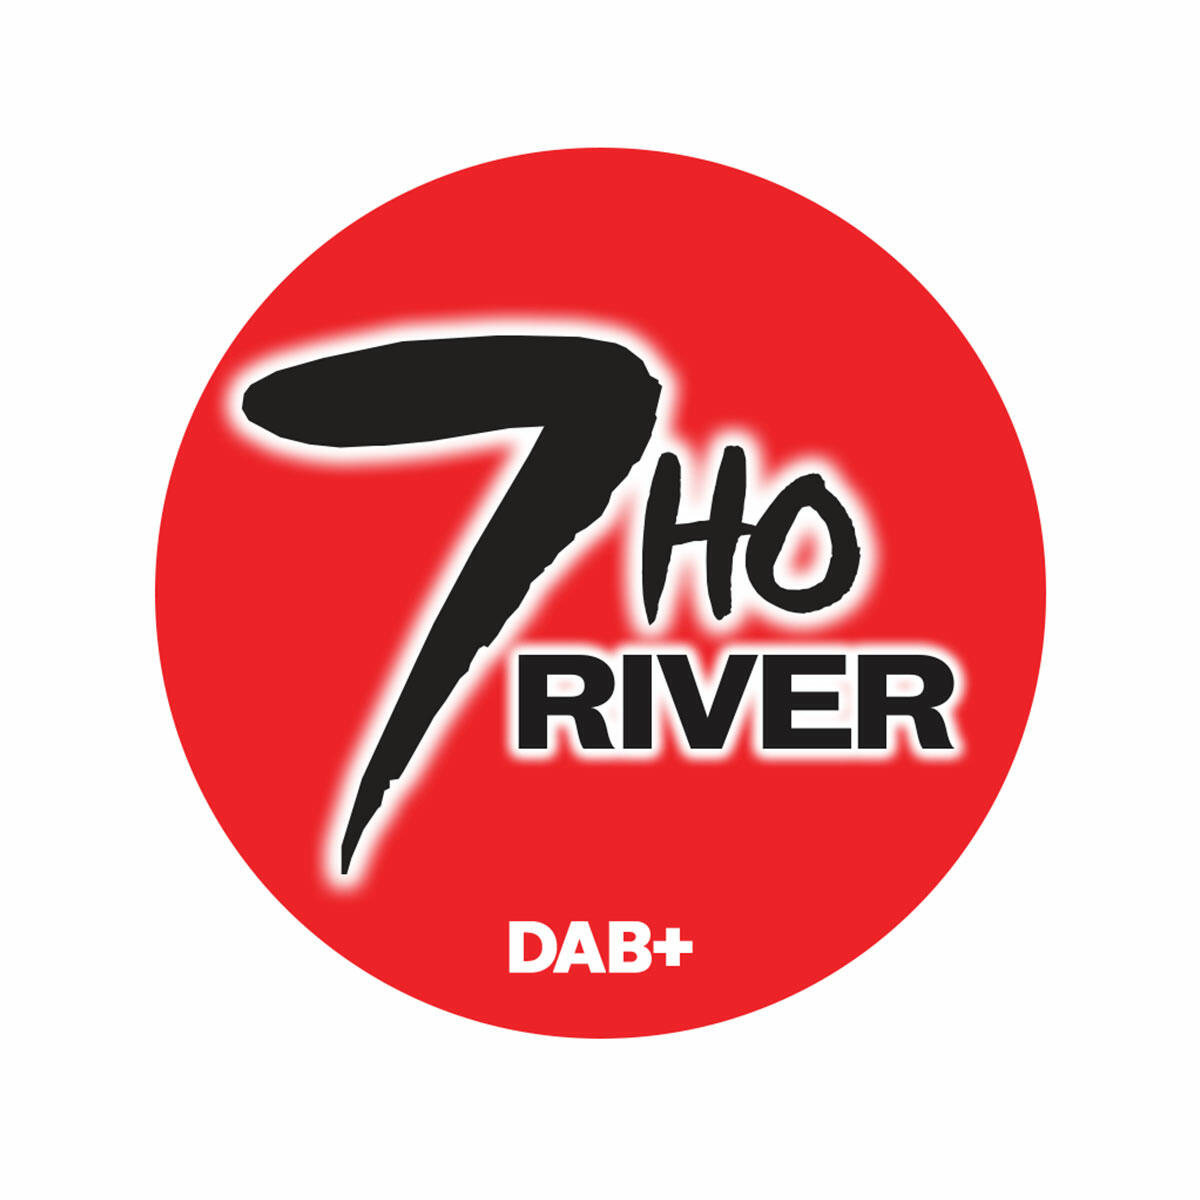 7HO River